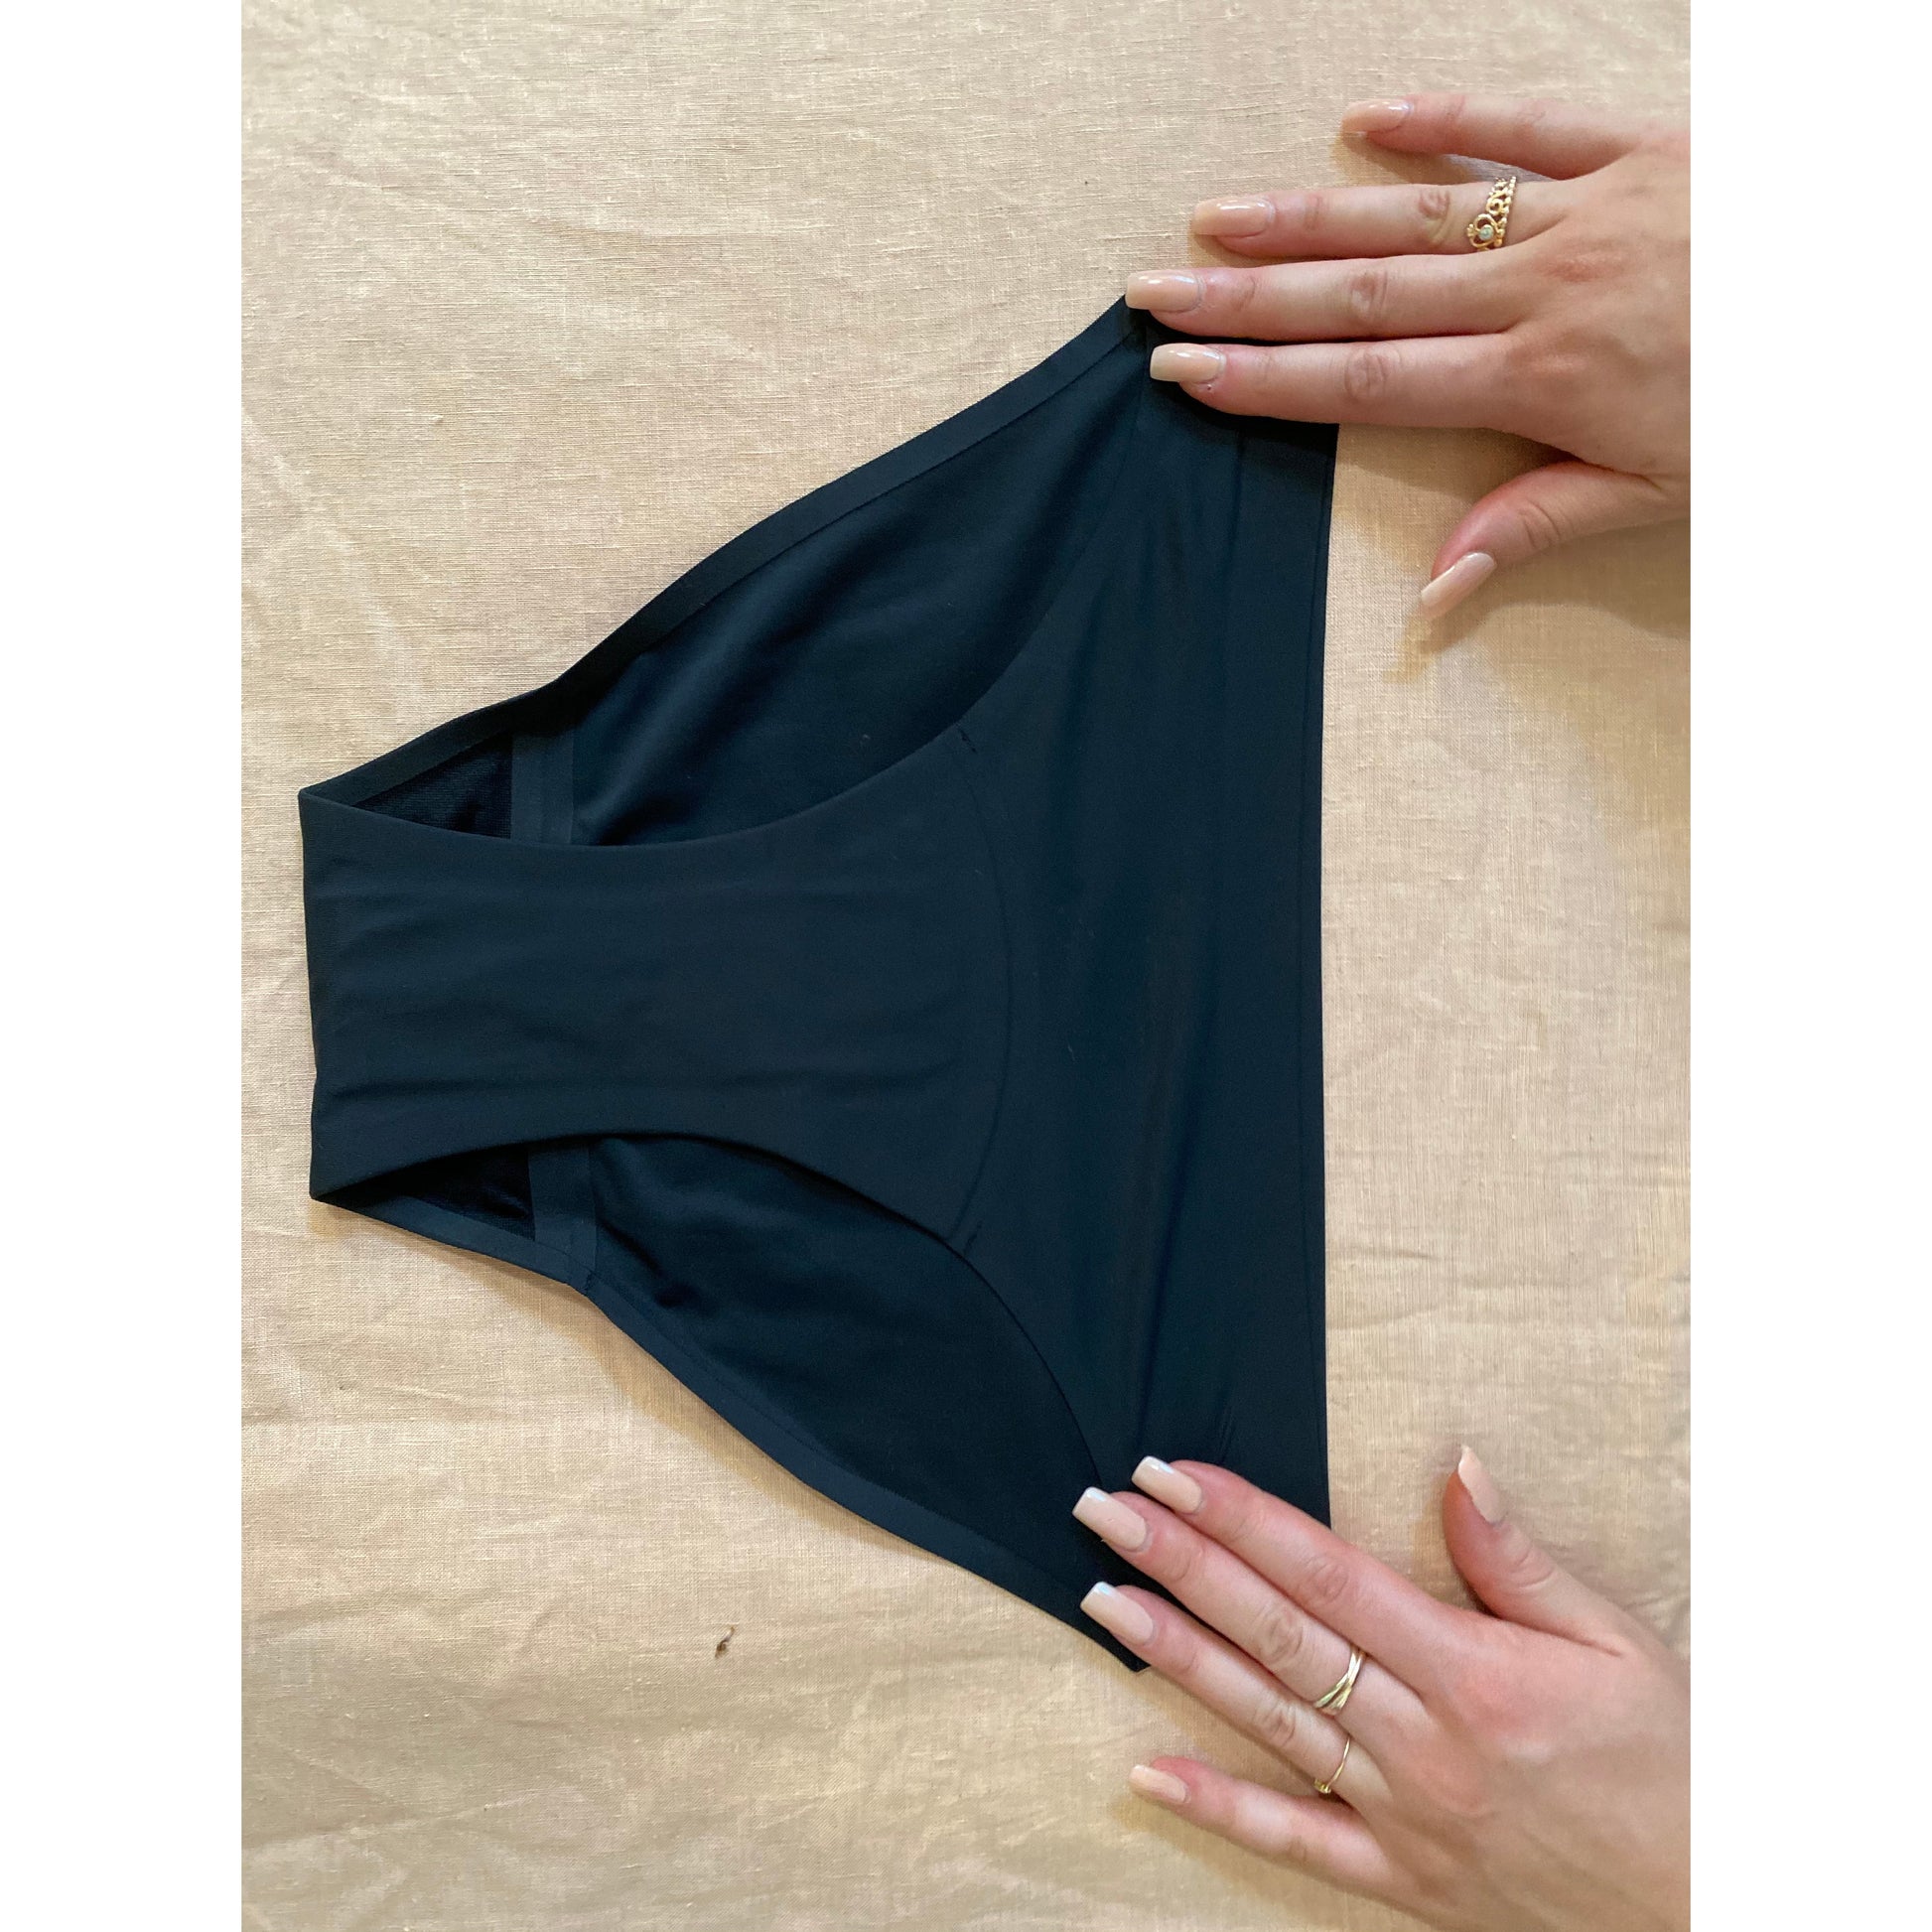 flat image period underwear 